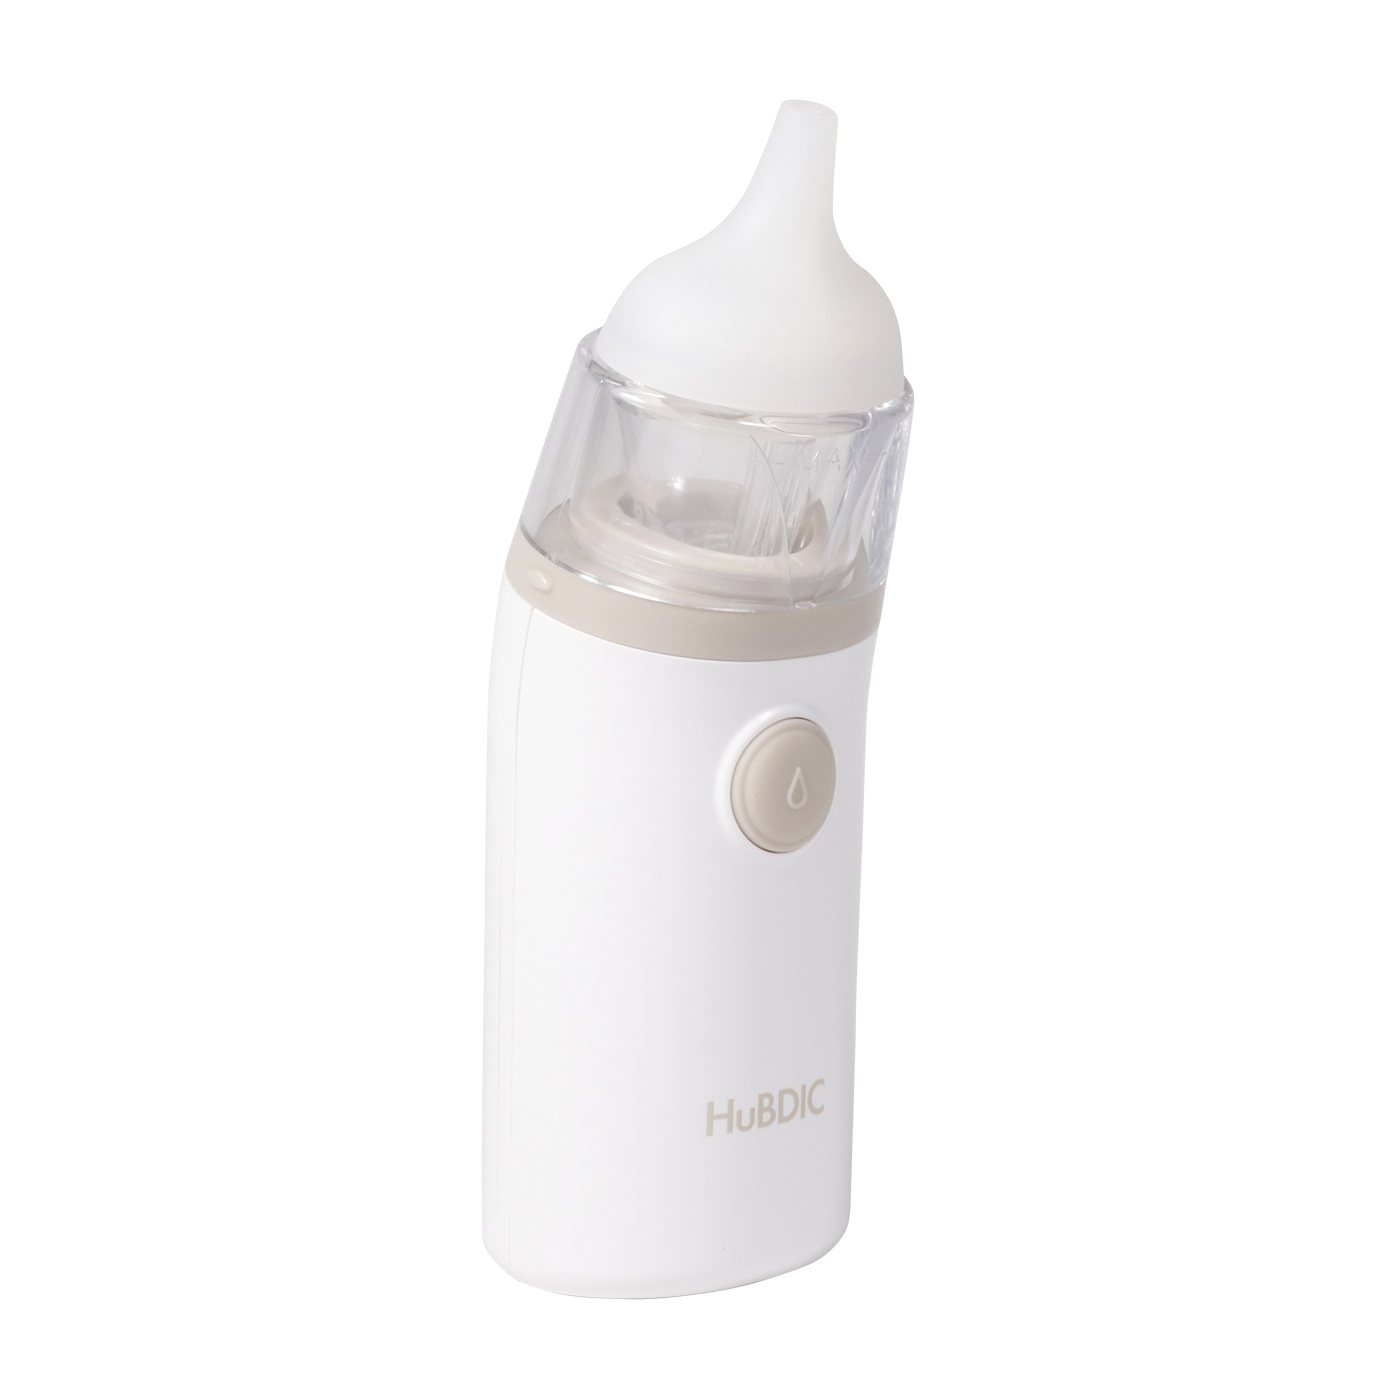 鼻水吸引用 透明シリコンノズル(スタンダードタイプ)2個 [メール便OK] 鼻水吸引器 鼻吸い器 部品